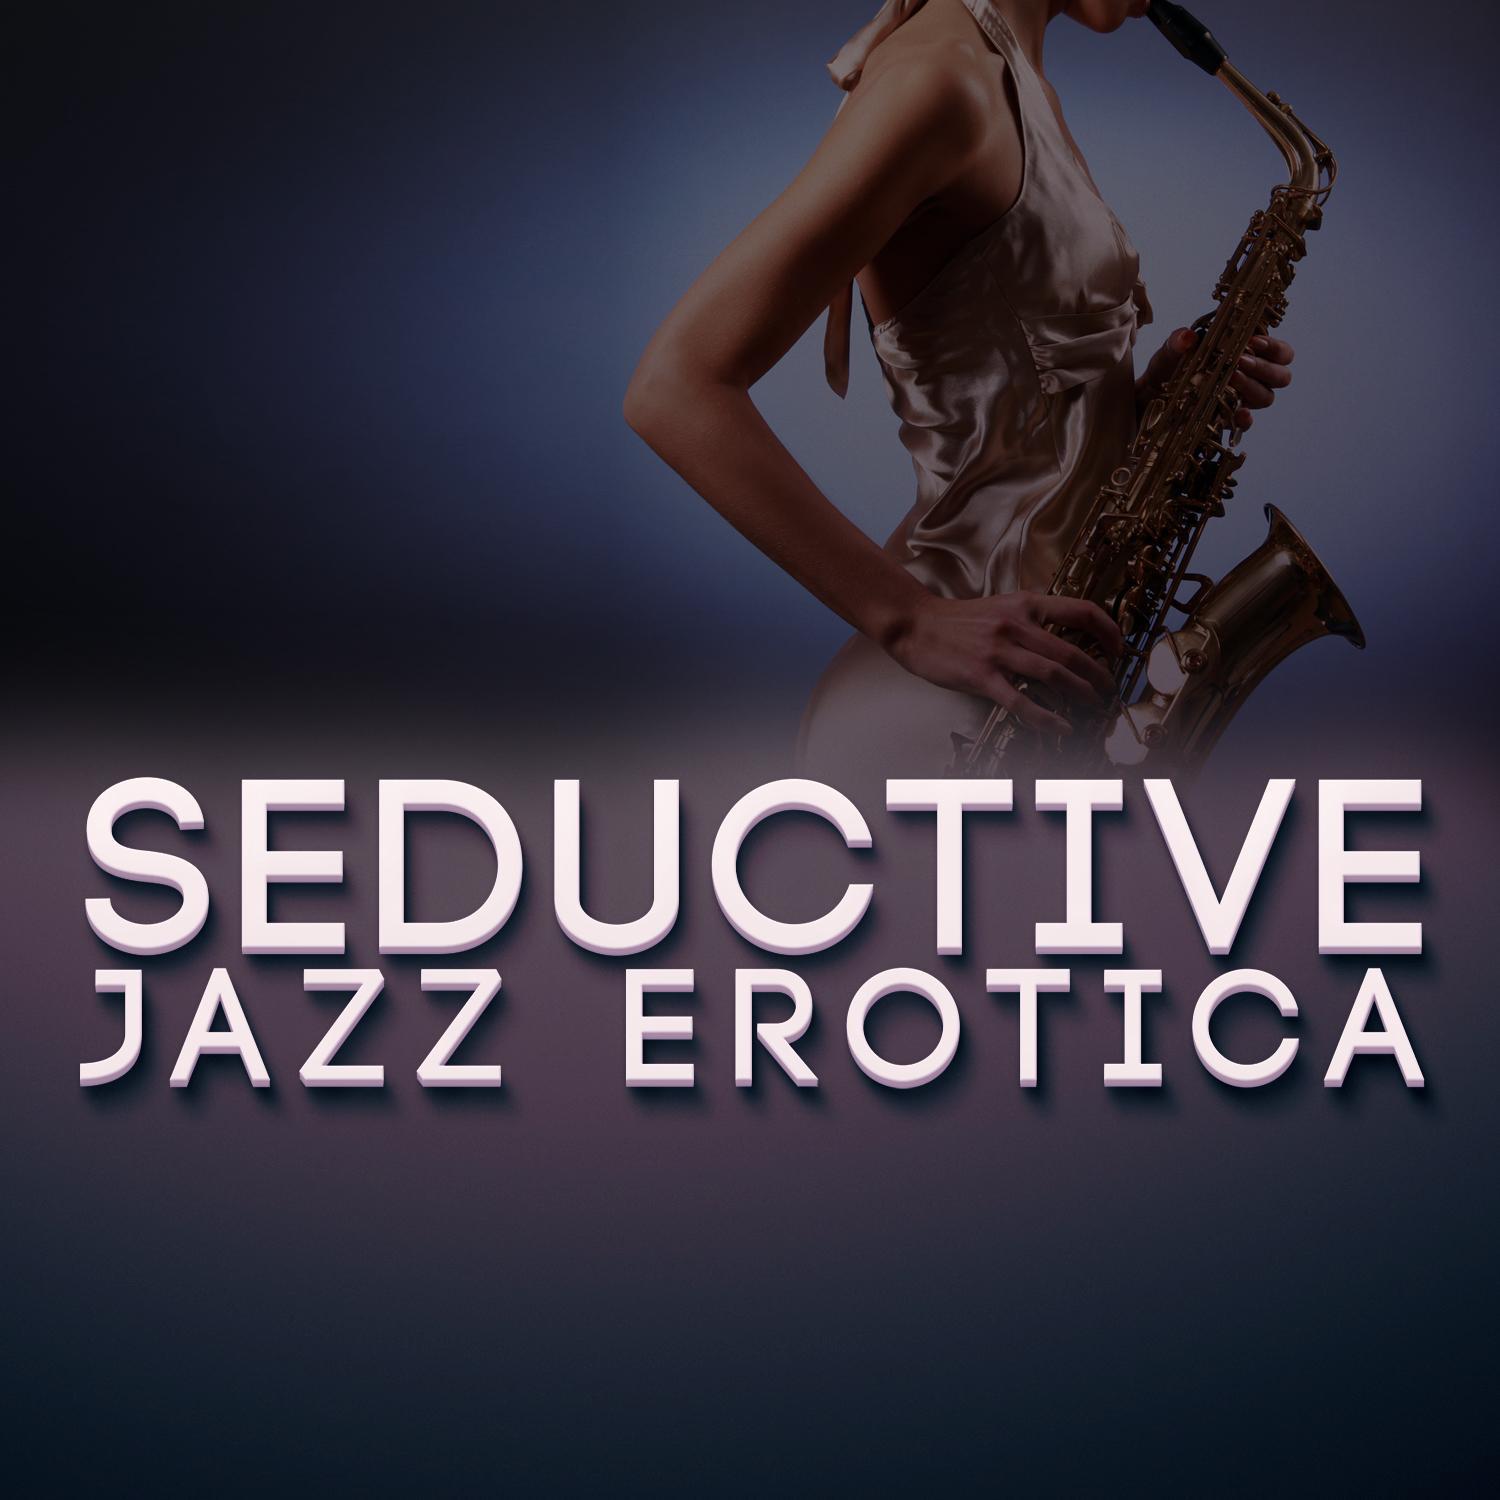 Seductive Jazz Erotica